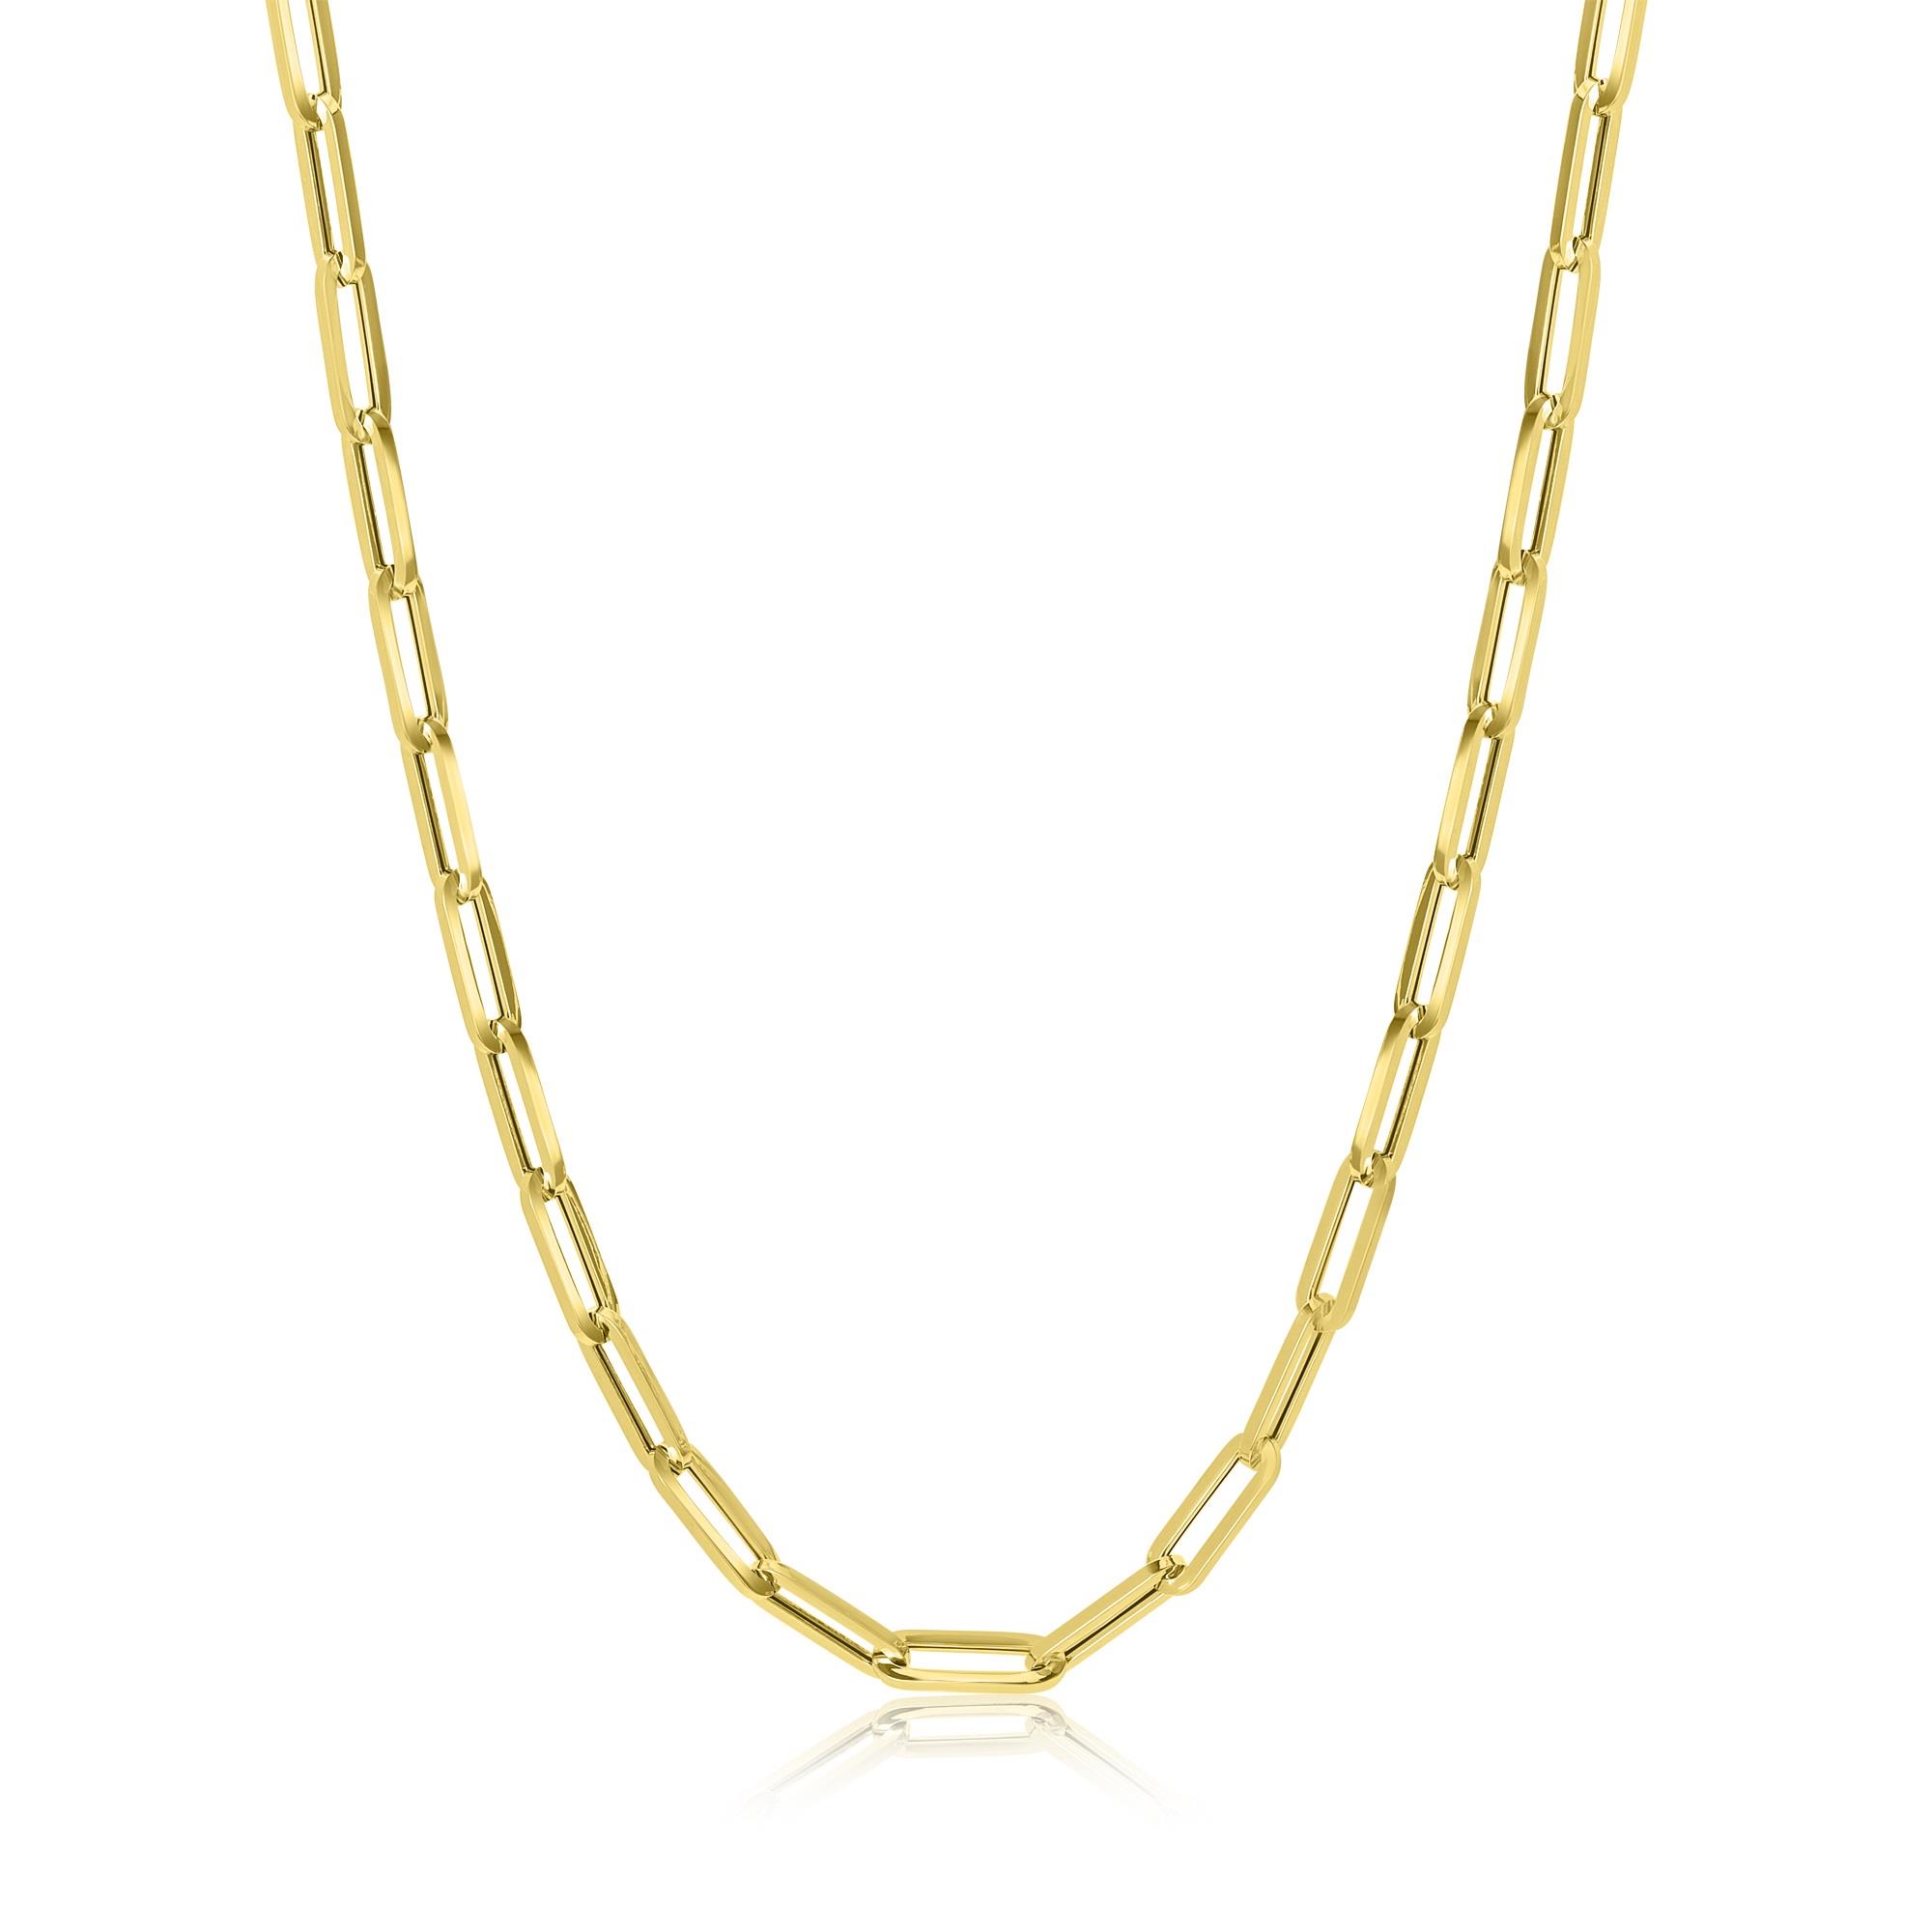 18ct Gold Paperlink Necklace 45cm | Pravins